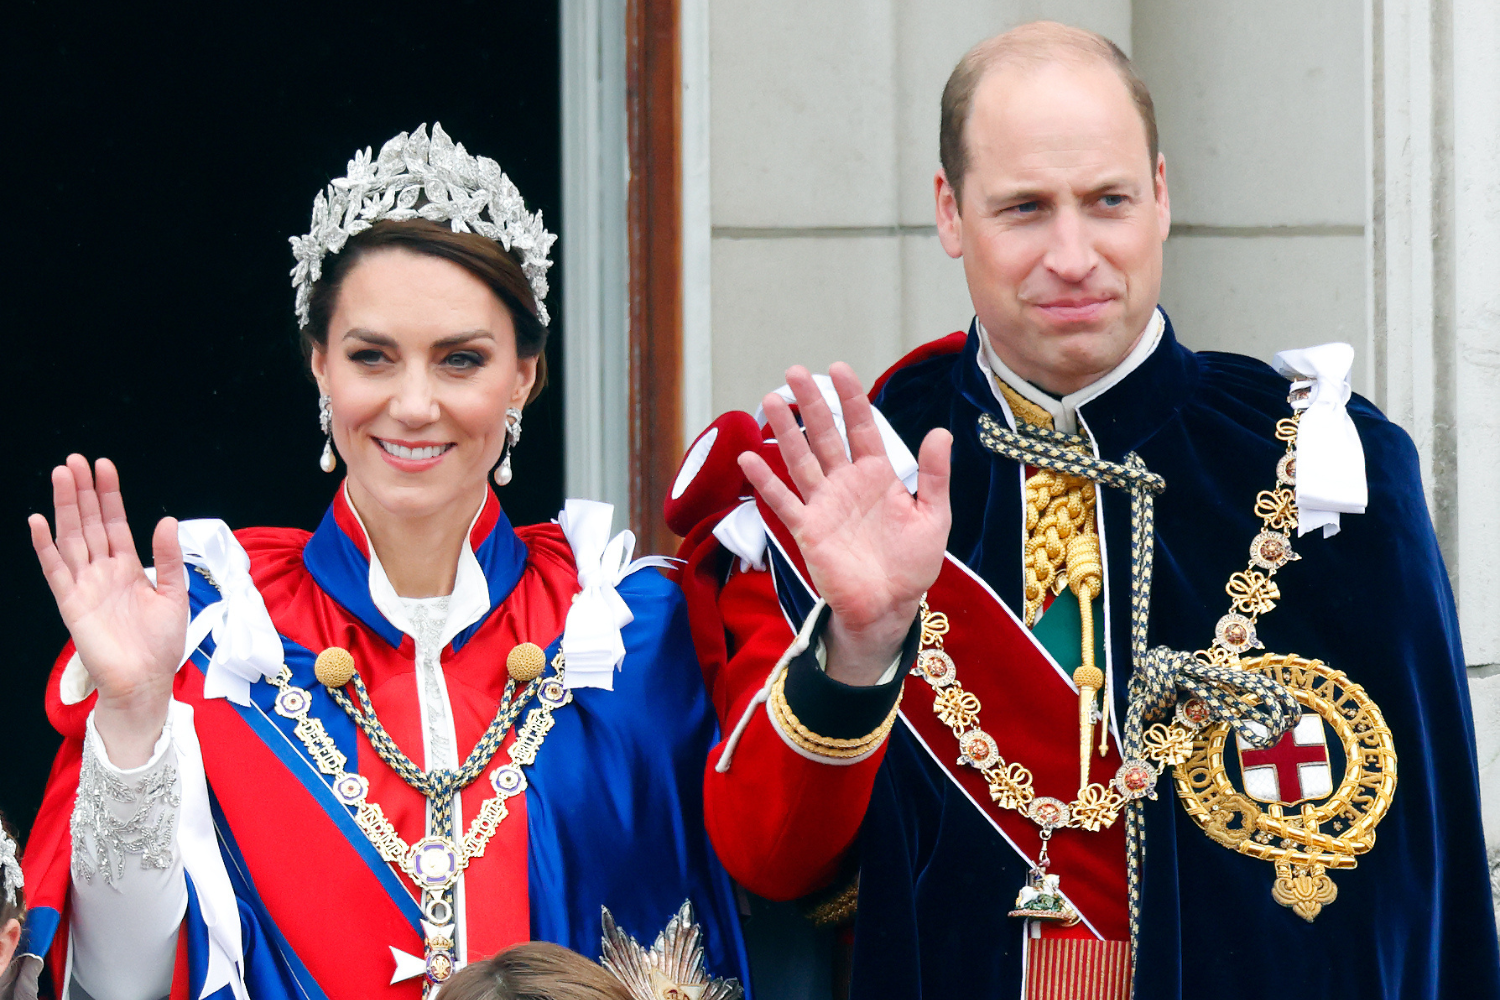 Les moments synchronisés du prince William et de Kate Middleton salués par les fans